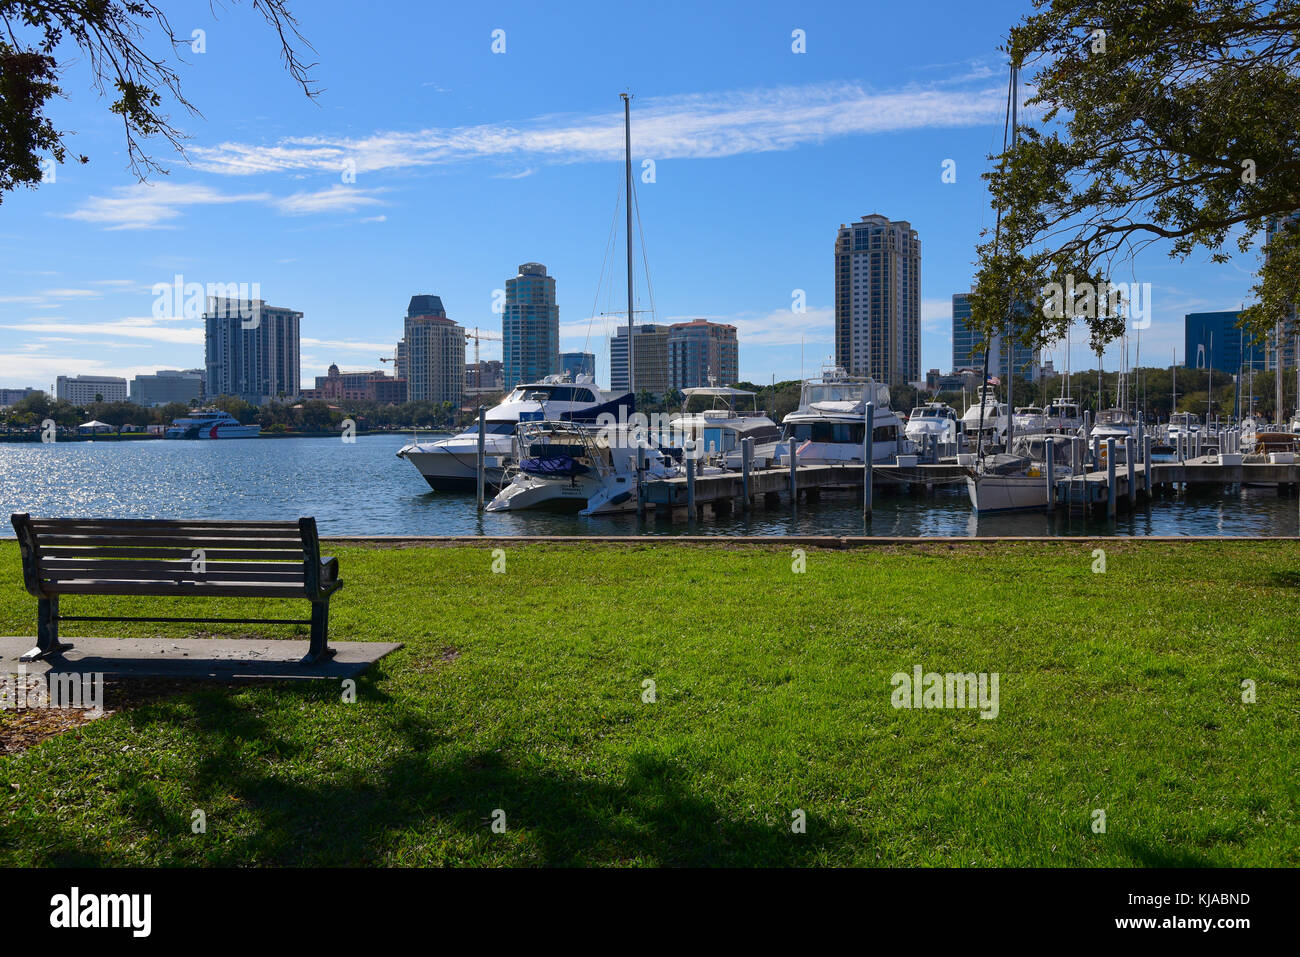 Ciudad scape vista de embarcaciones en el puerto de San Petersburgo, la bahía de Tampa, Florida, EE.UU., el día soleado Foto de stock